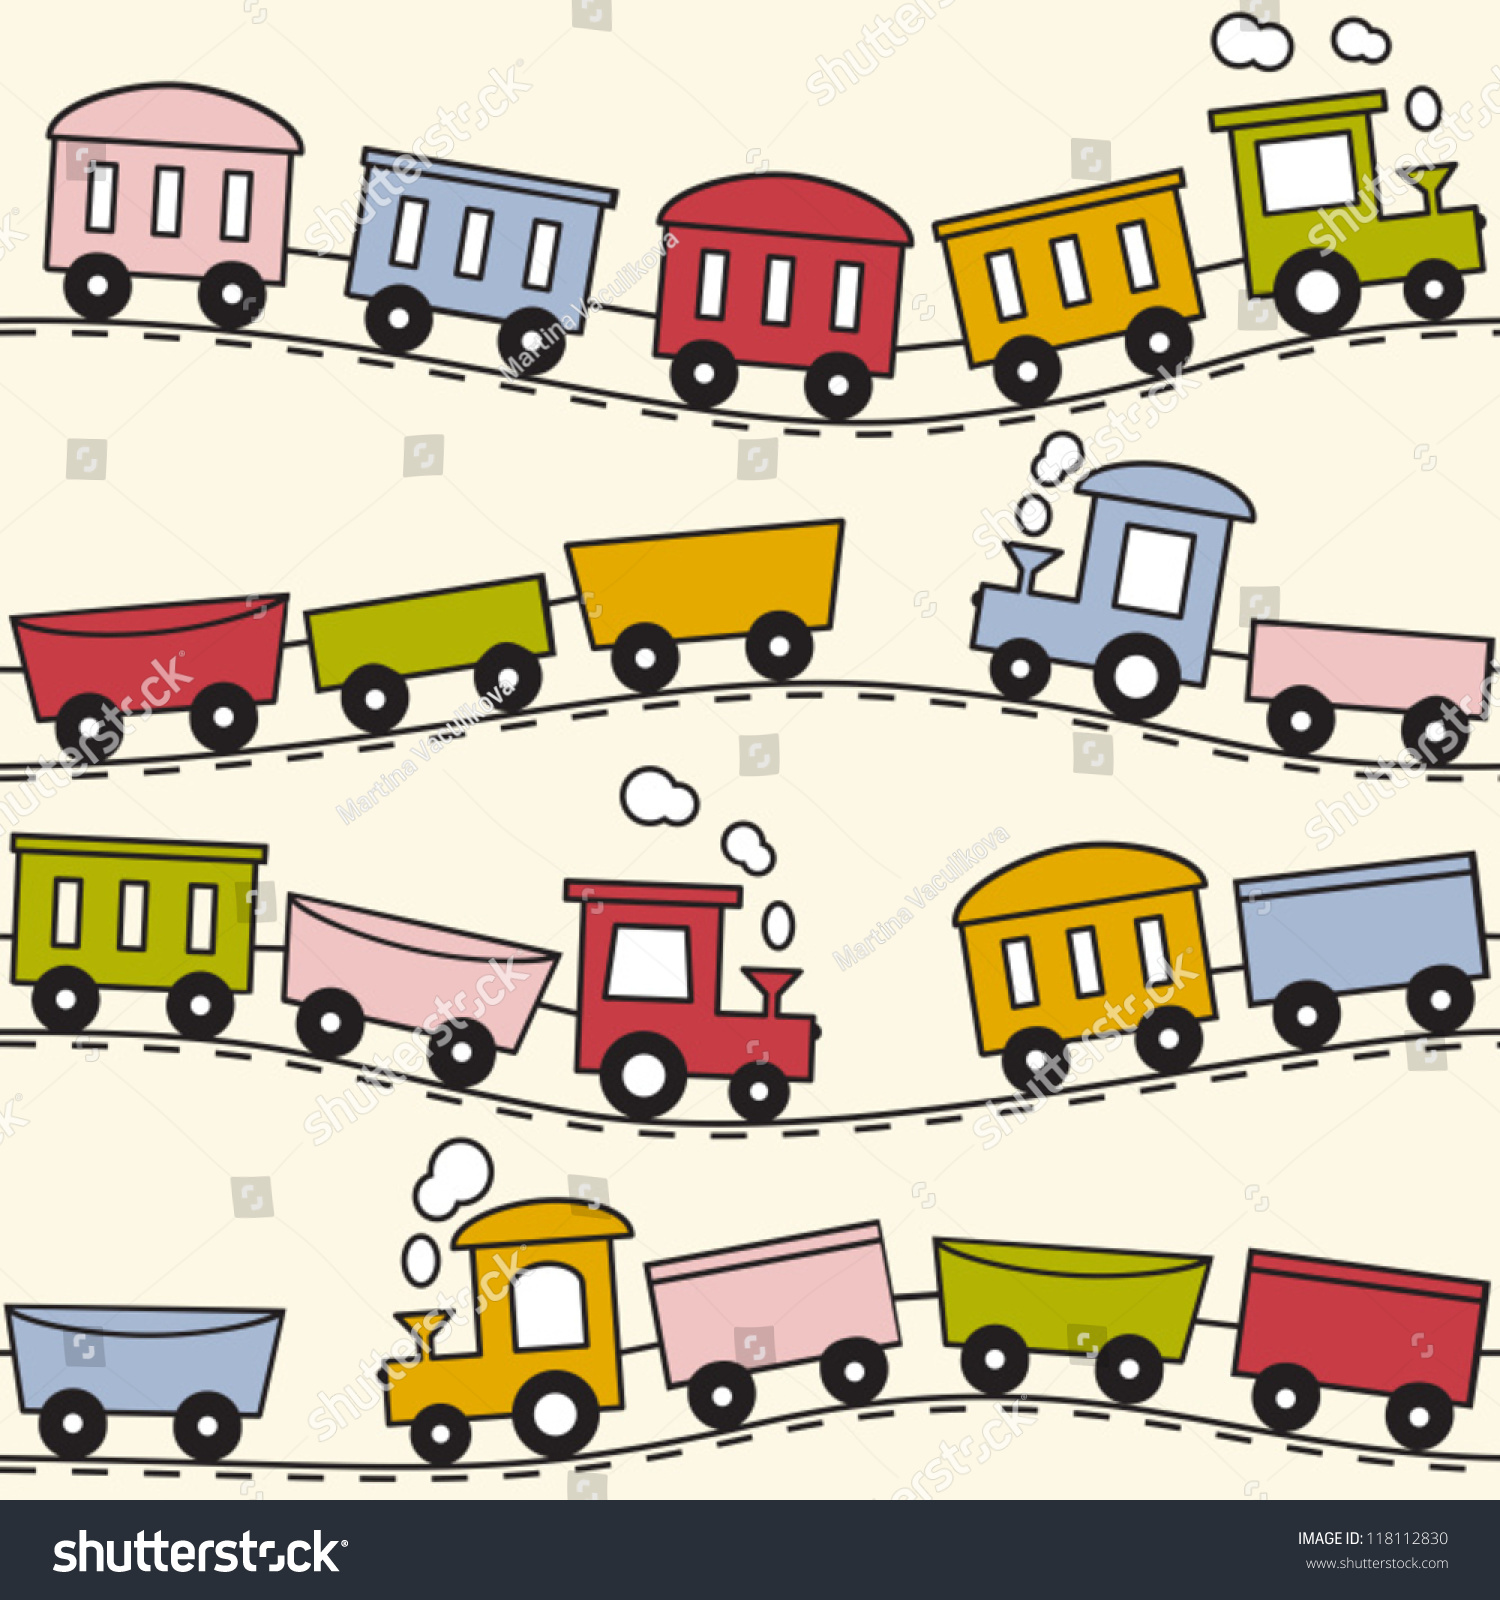 Boutique La Vie du Rail : Modélisme ferroviaire, jouets, livres, trains